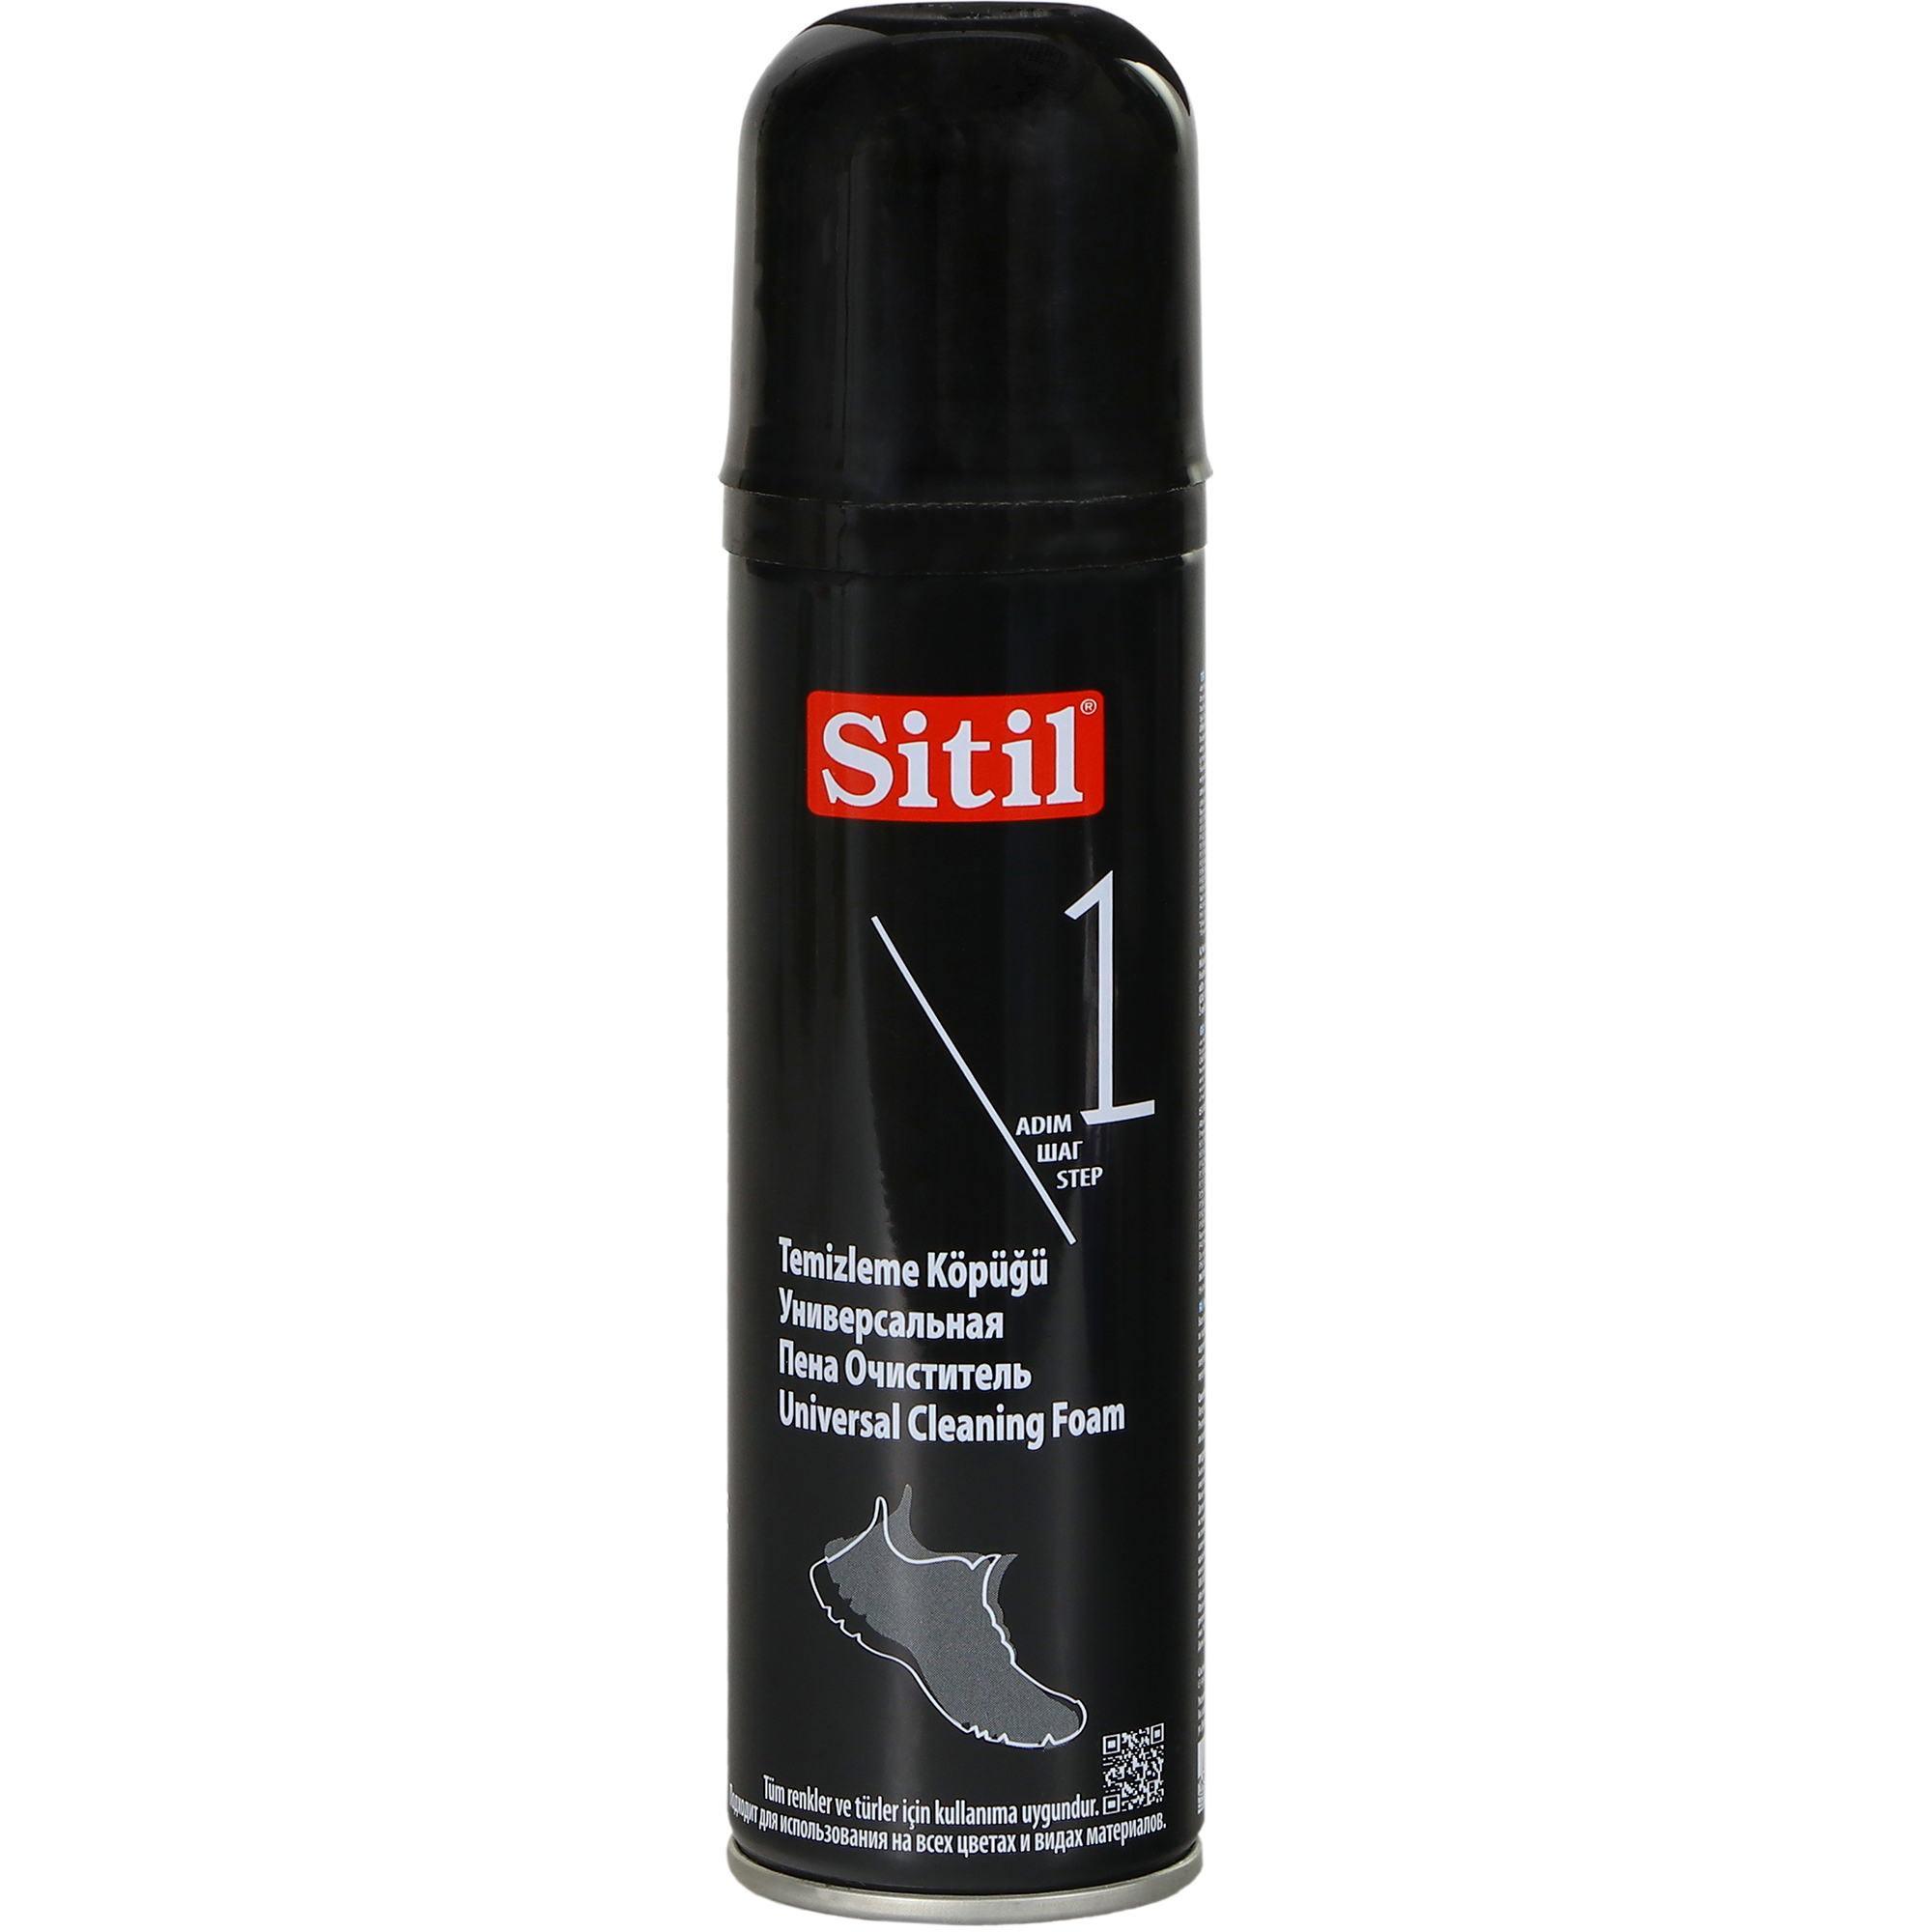 Пена-очиститель Sitil универсальная 150 мл пена очиститель штрих основной уход универсальная 150мл